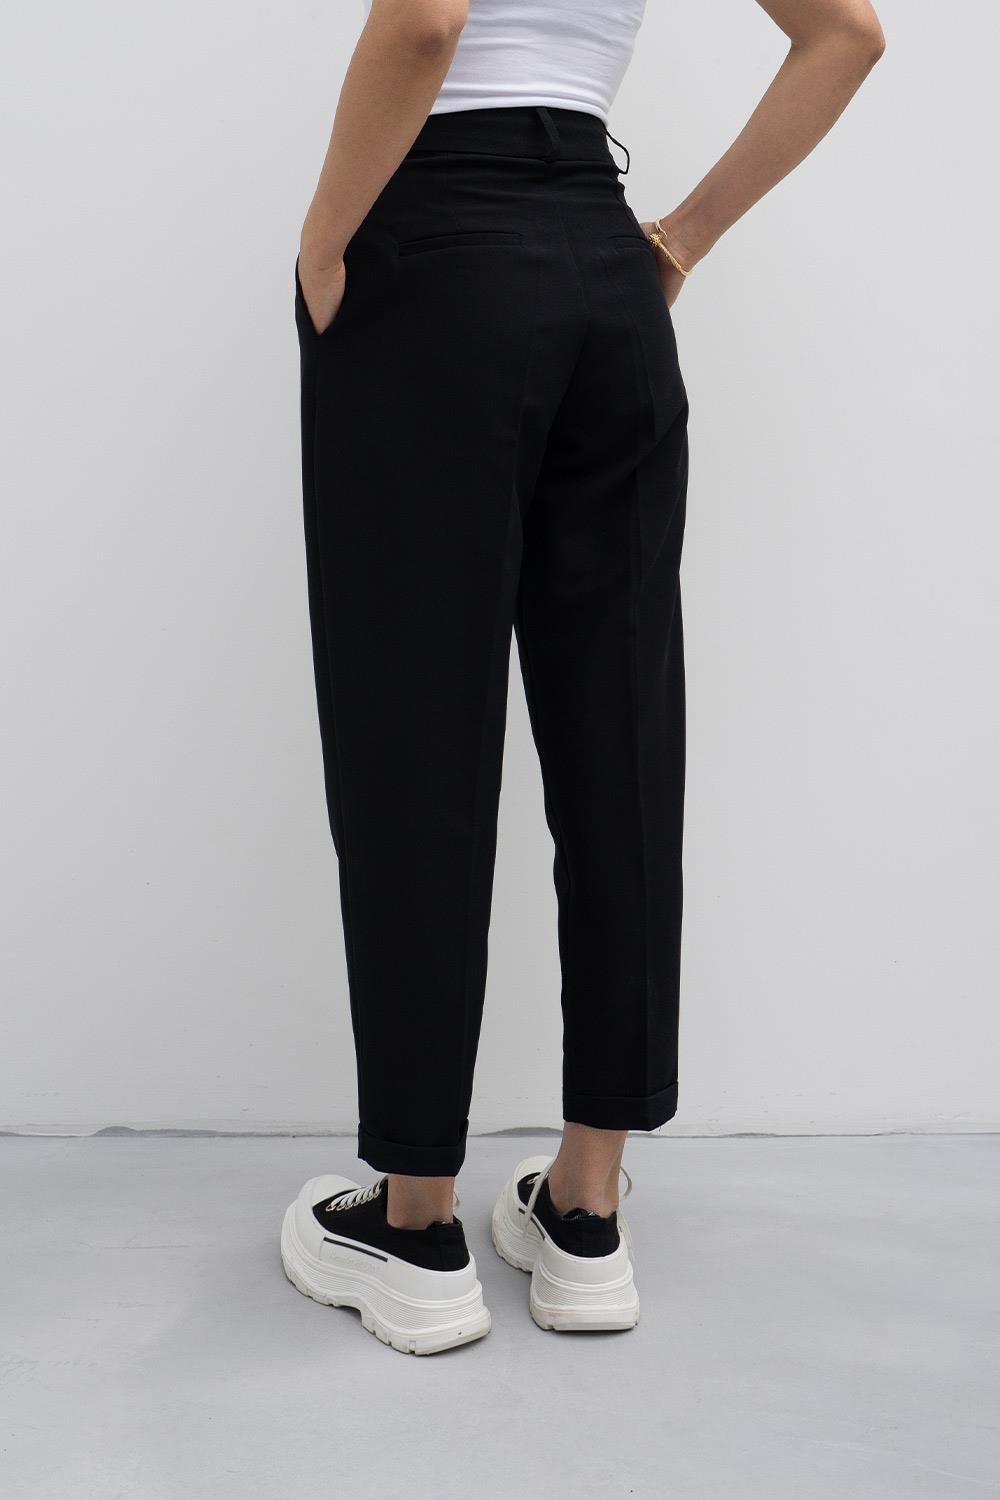 Kadın Siyah Pileli Kumaş Pantolon | Pranga Giyim